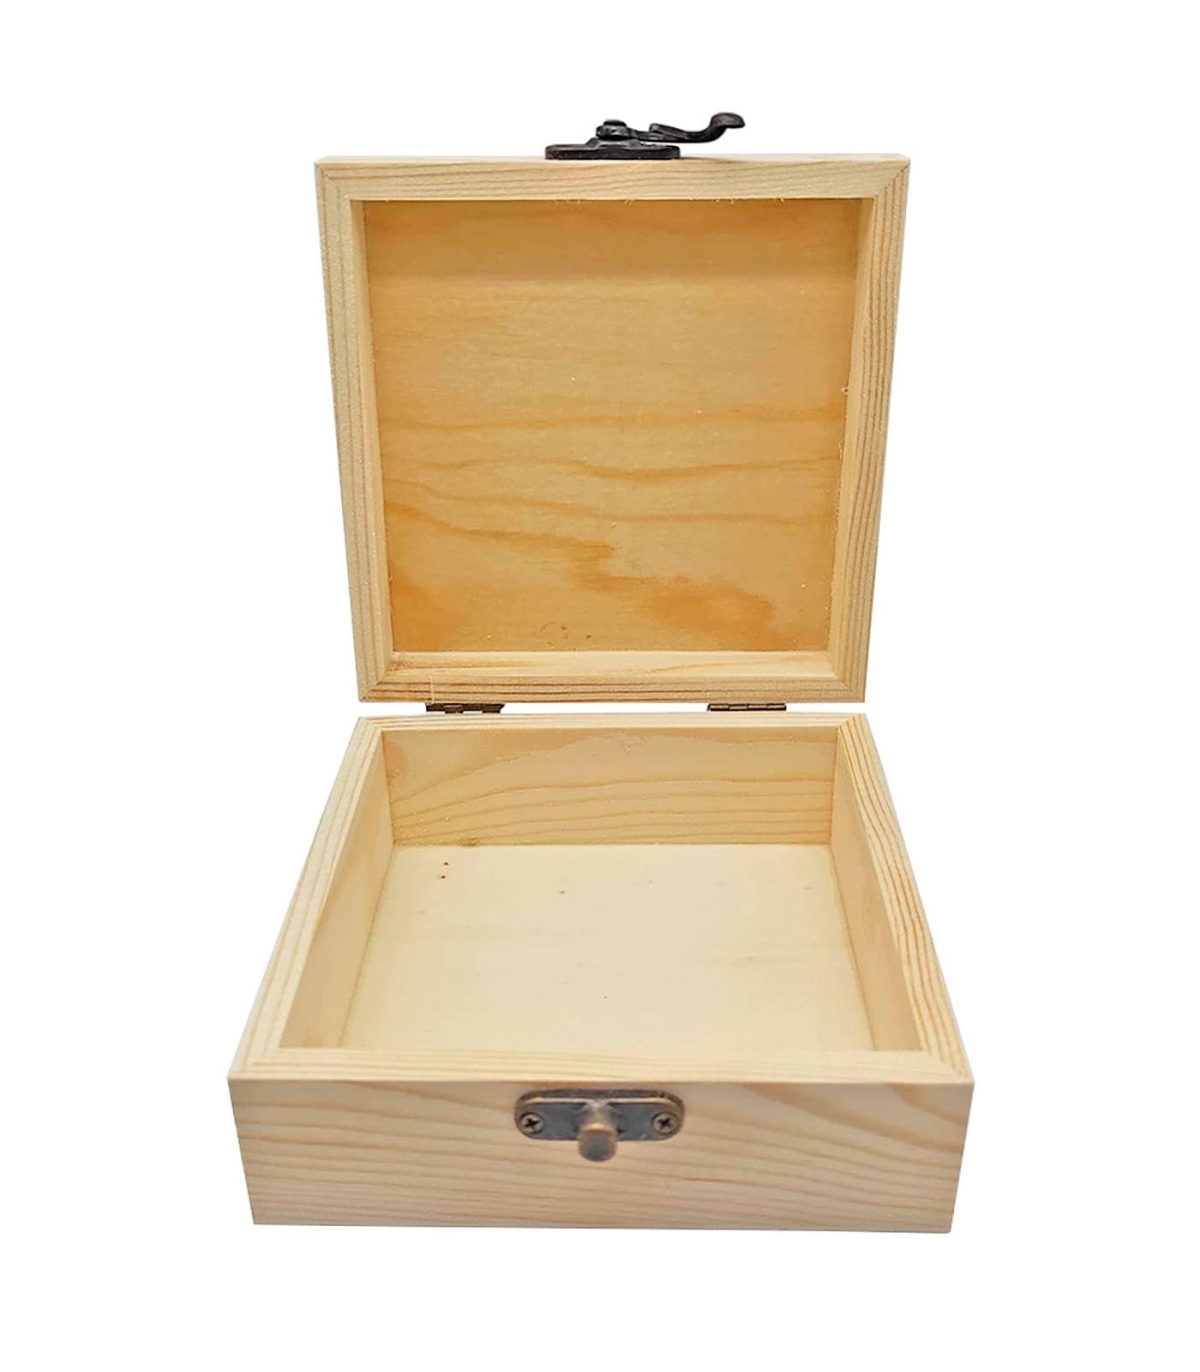 Caja de madera cuadrada con cierre metálico 12 x 12 x 5,3 cm